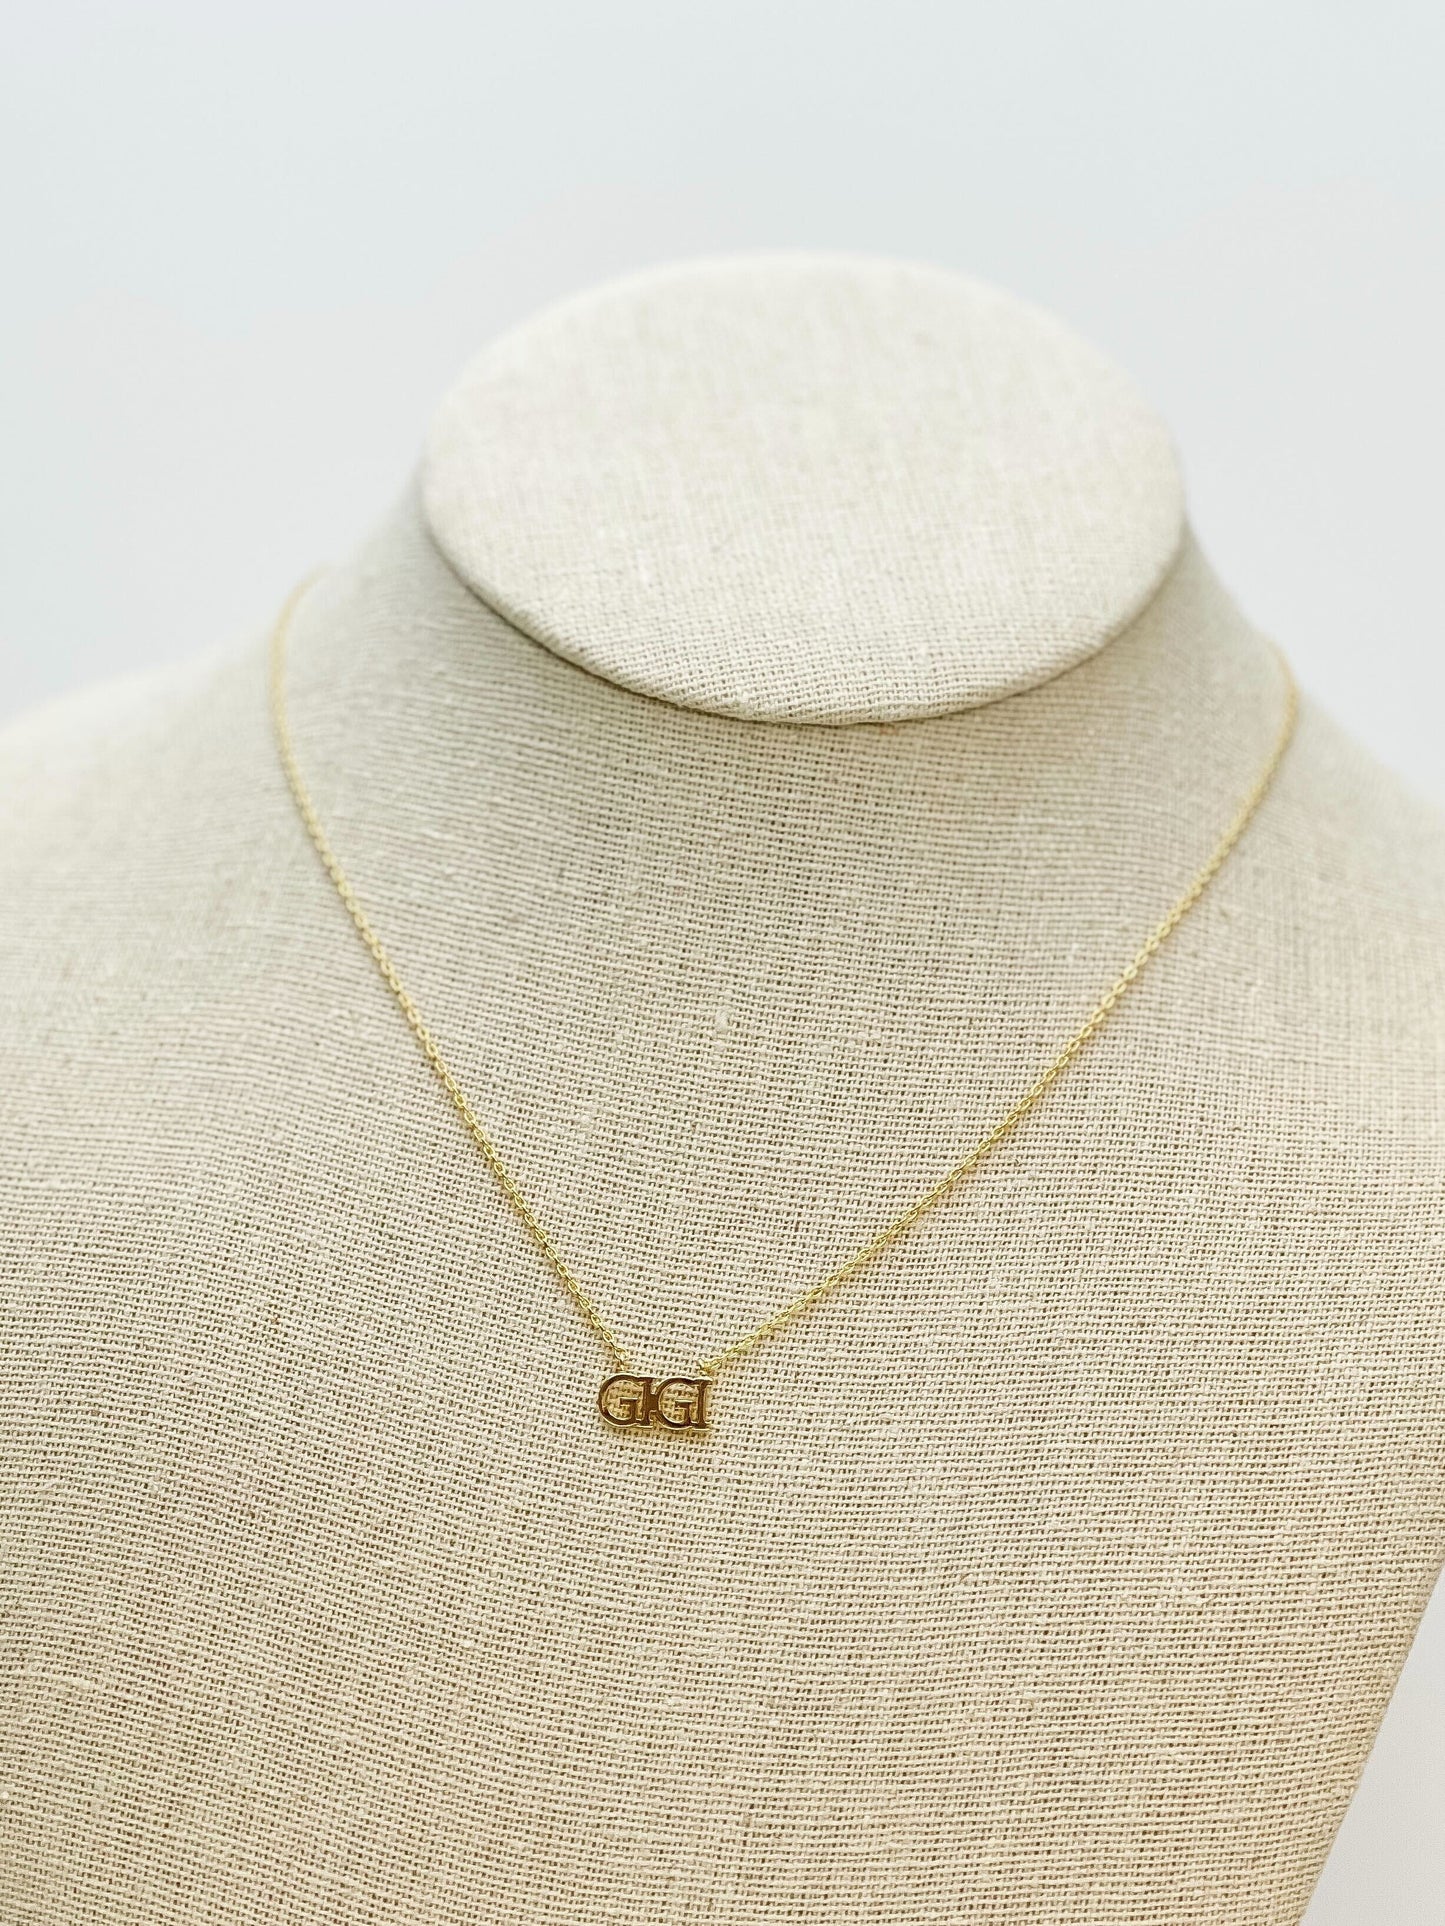 PREORDER: Gigi Gold Pendant Necklace